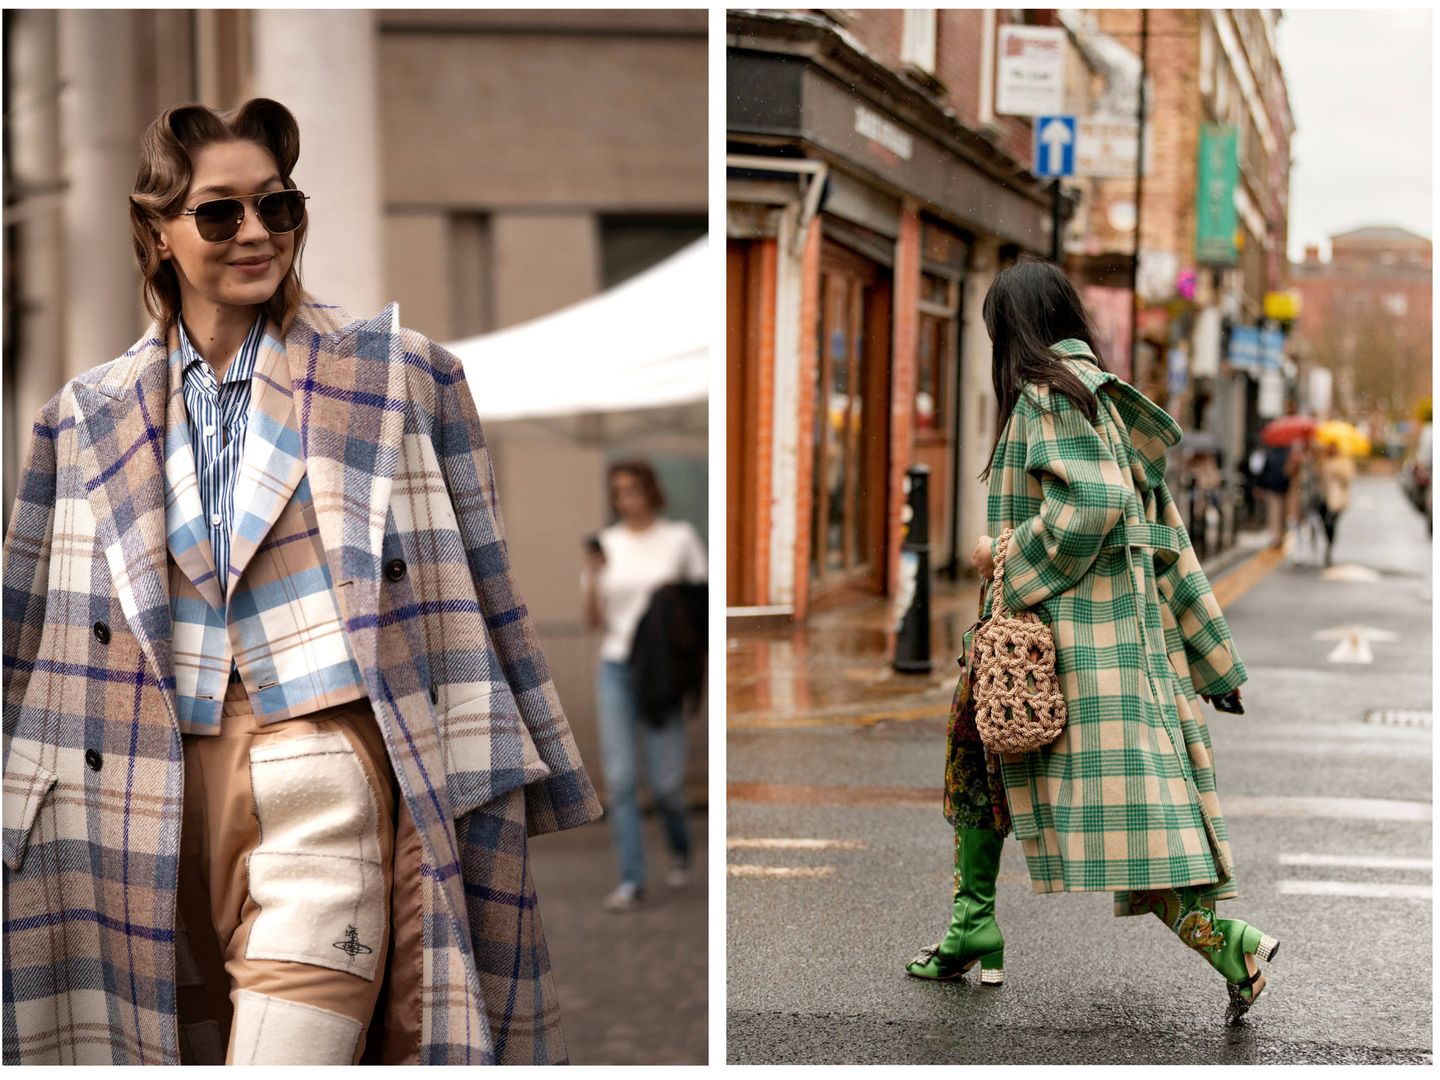 La modelo Gigi Hadid con un look a cuadros y una influencer con un abrigo tartán. (Imaxtree)